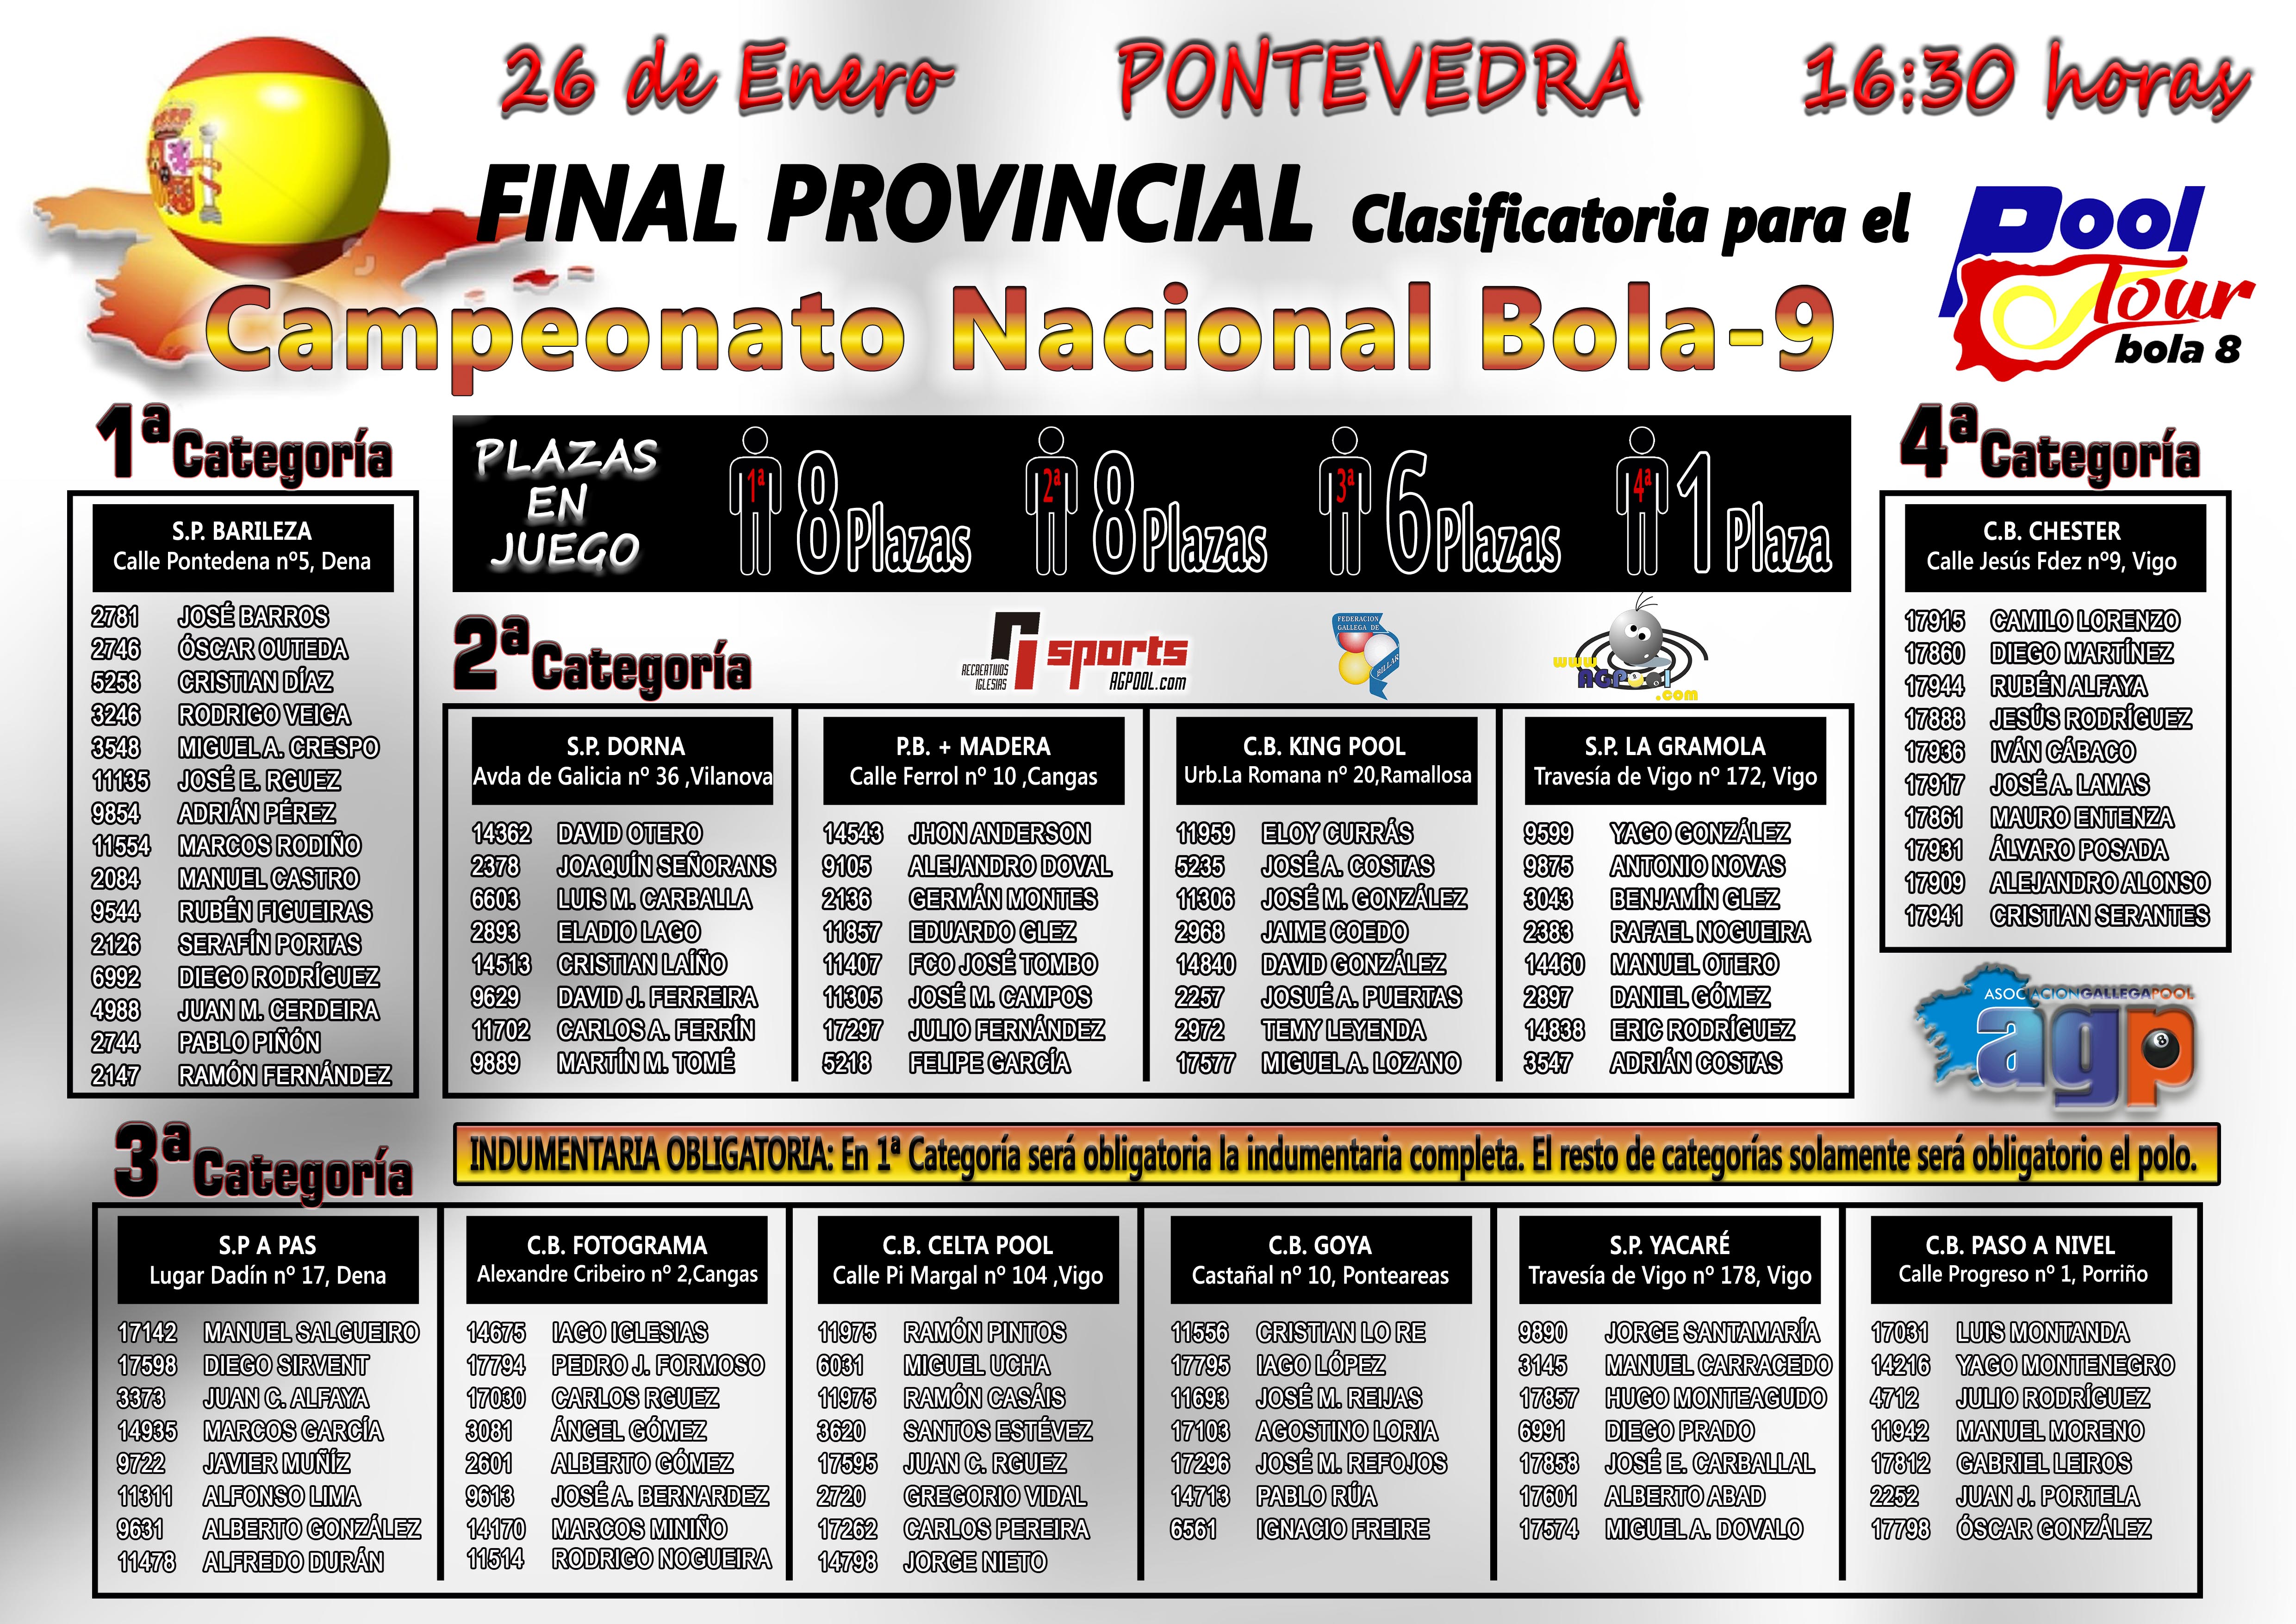 Sorteos Finales Provinciales - Pontevedra